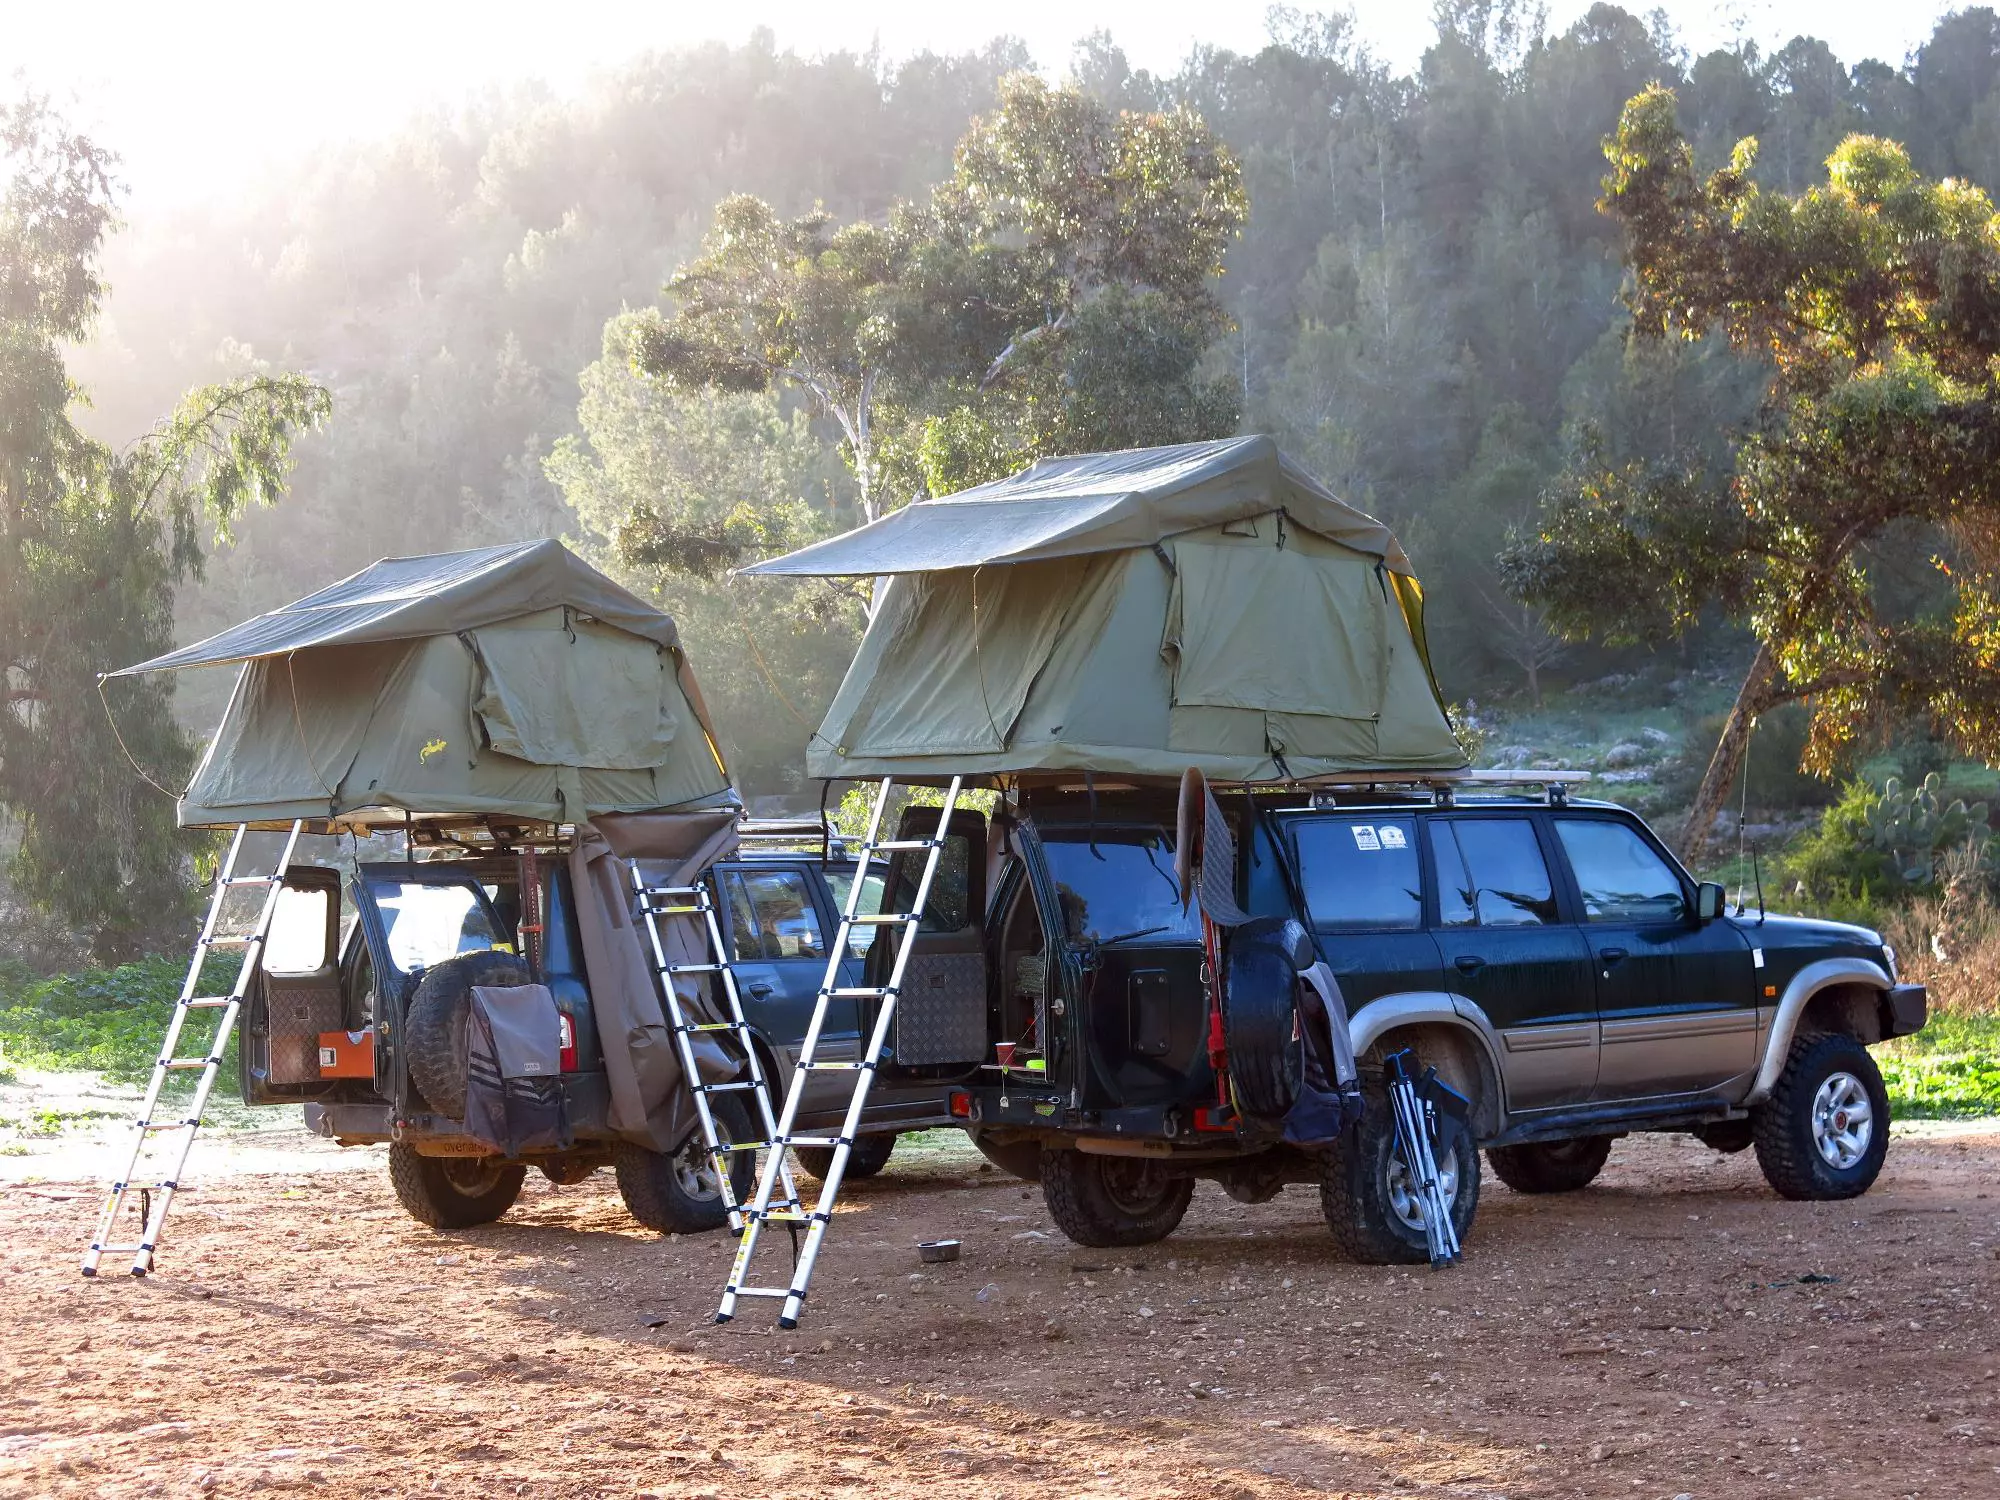 אוהלי הגג מאפשרים לג'יפאי להרגיש בבית בכל מקום. בקומת הקרקע יש מקלחת, מטבח, מקרר ושאר תפנוקים